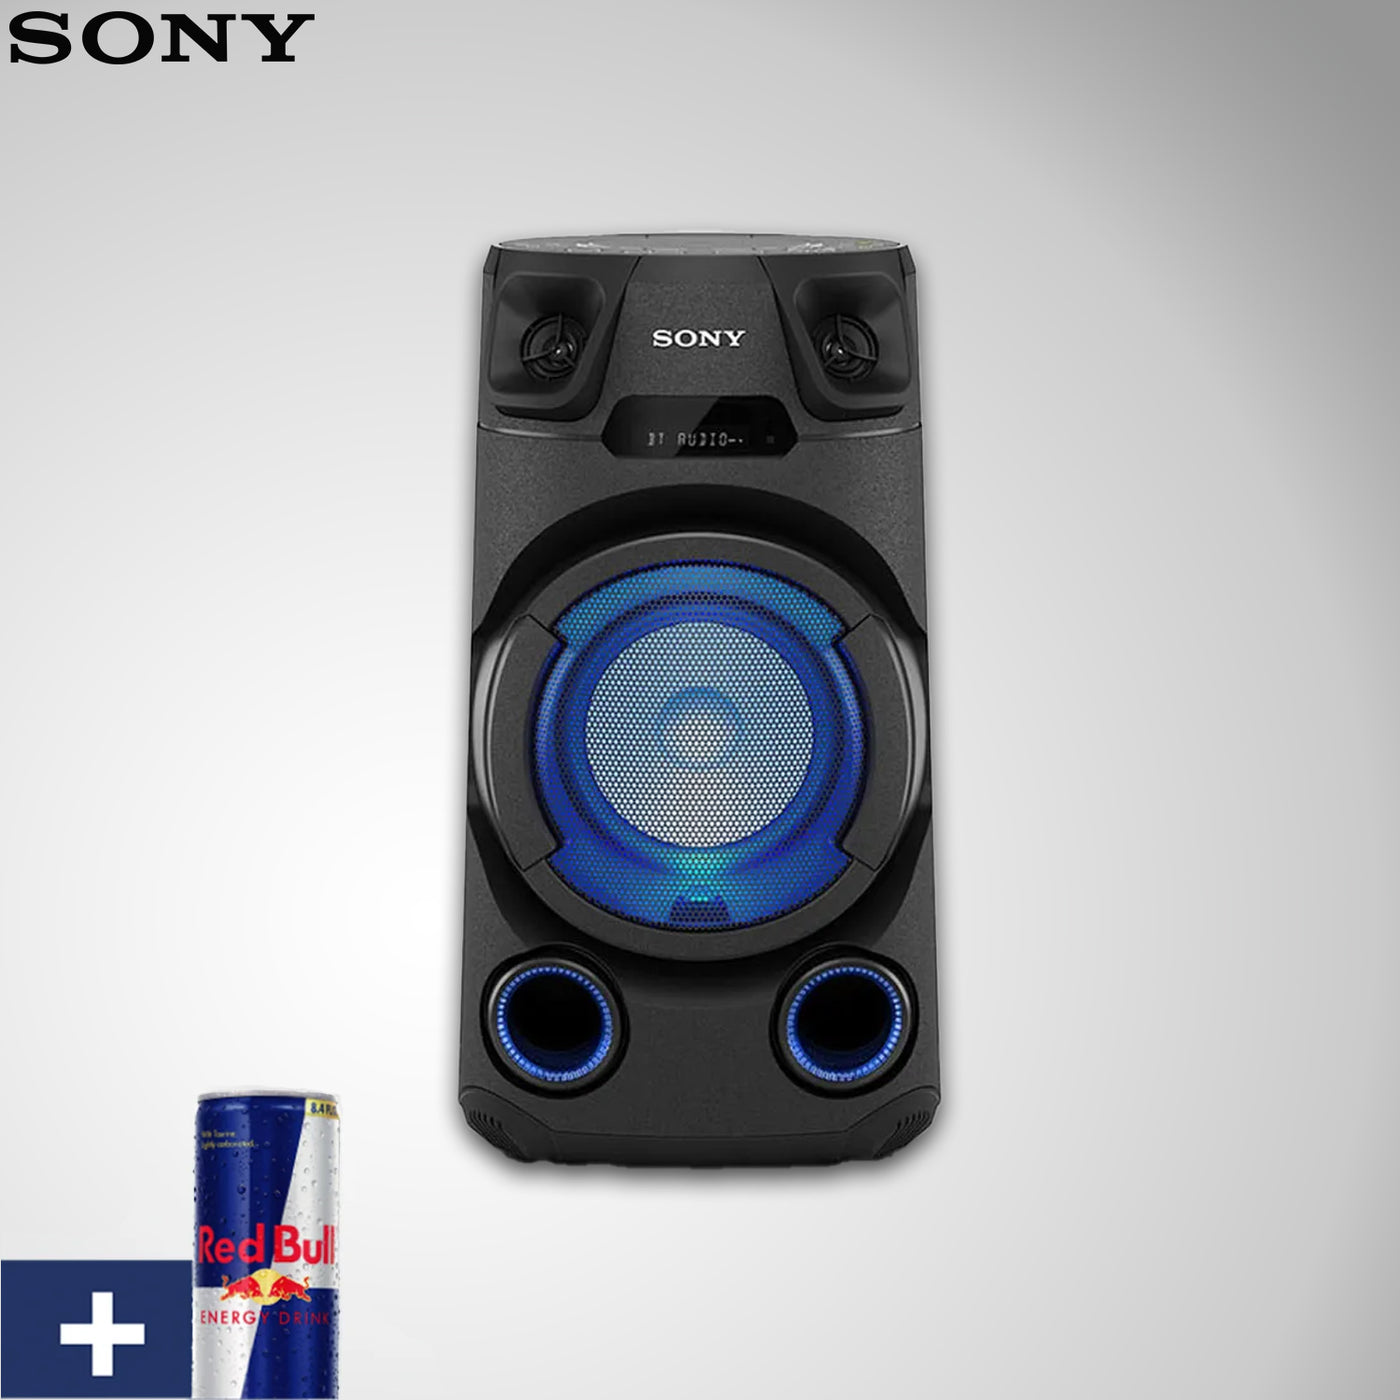 Equipo de sonido Sony de alta potencia MHC-V13 con Bluetooth